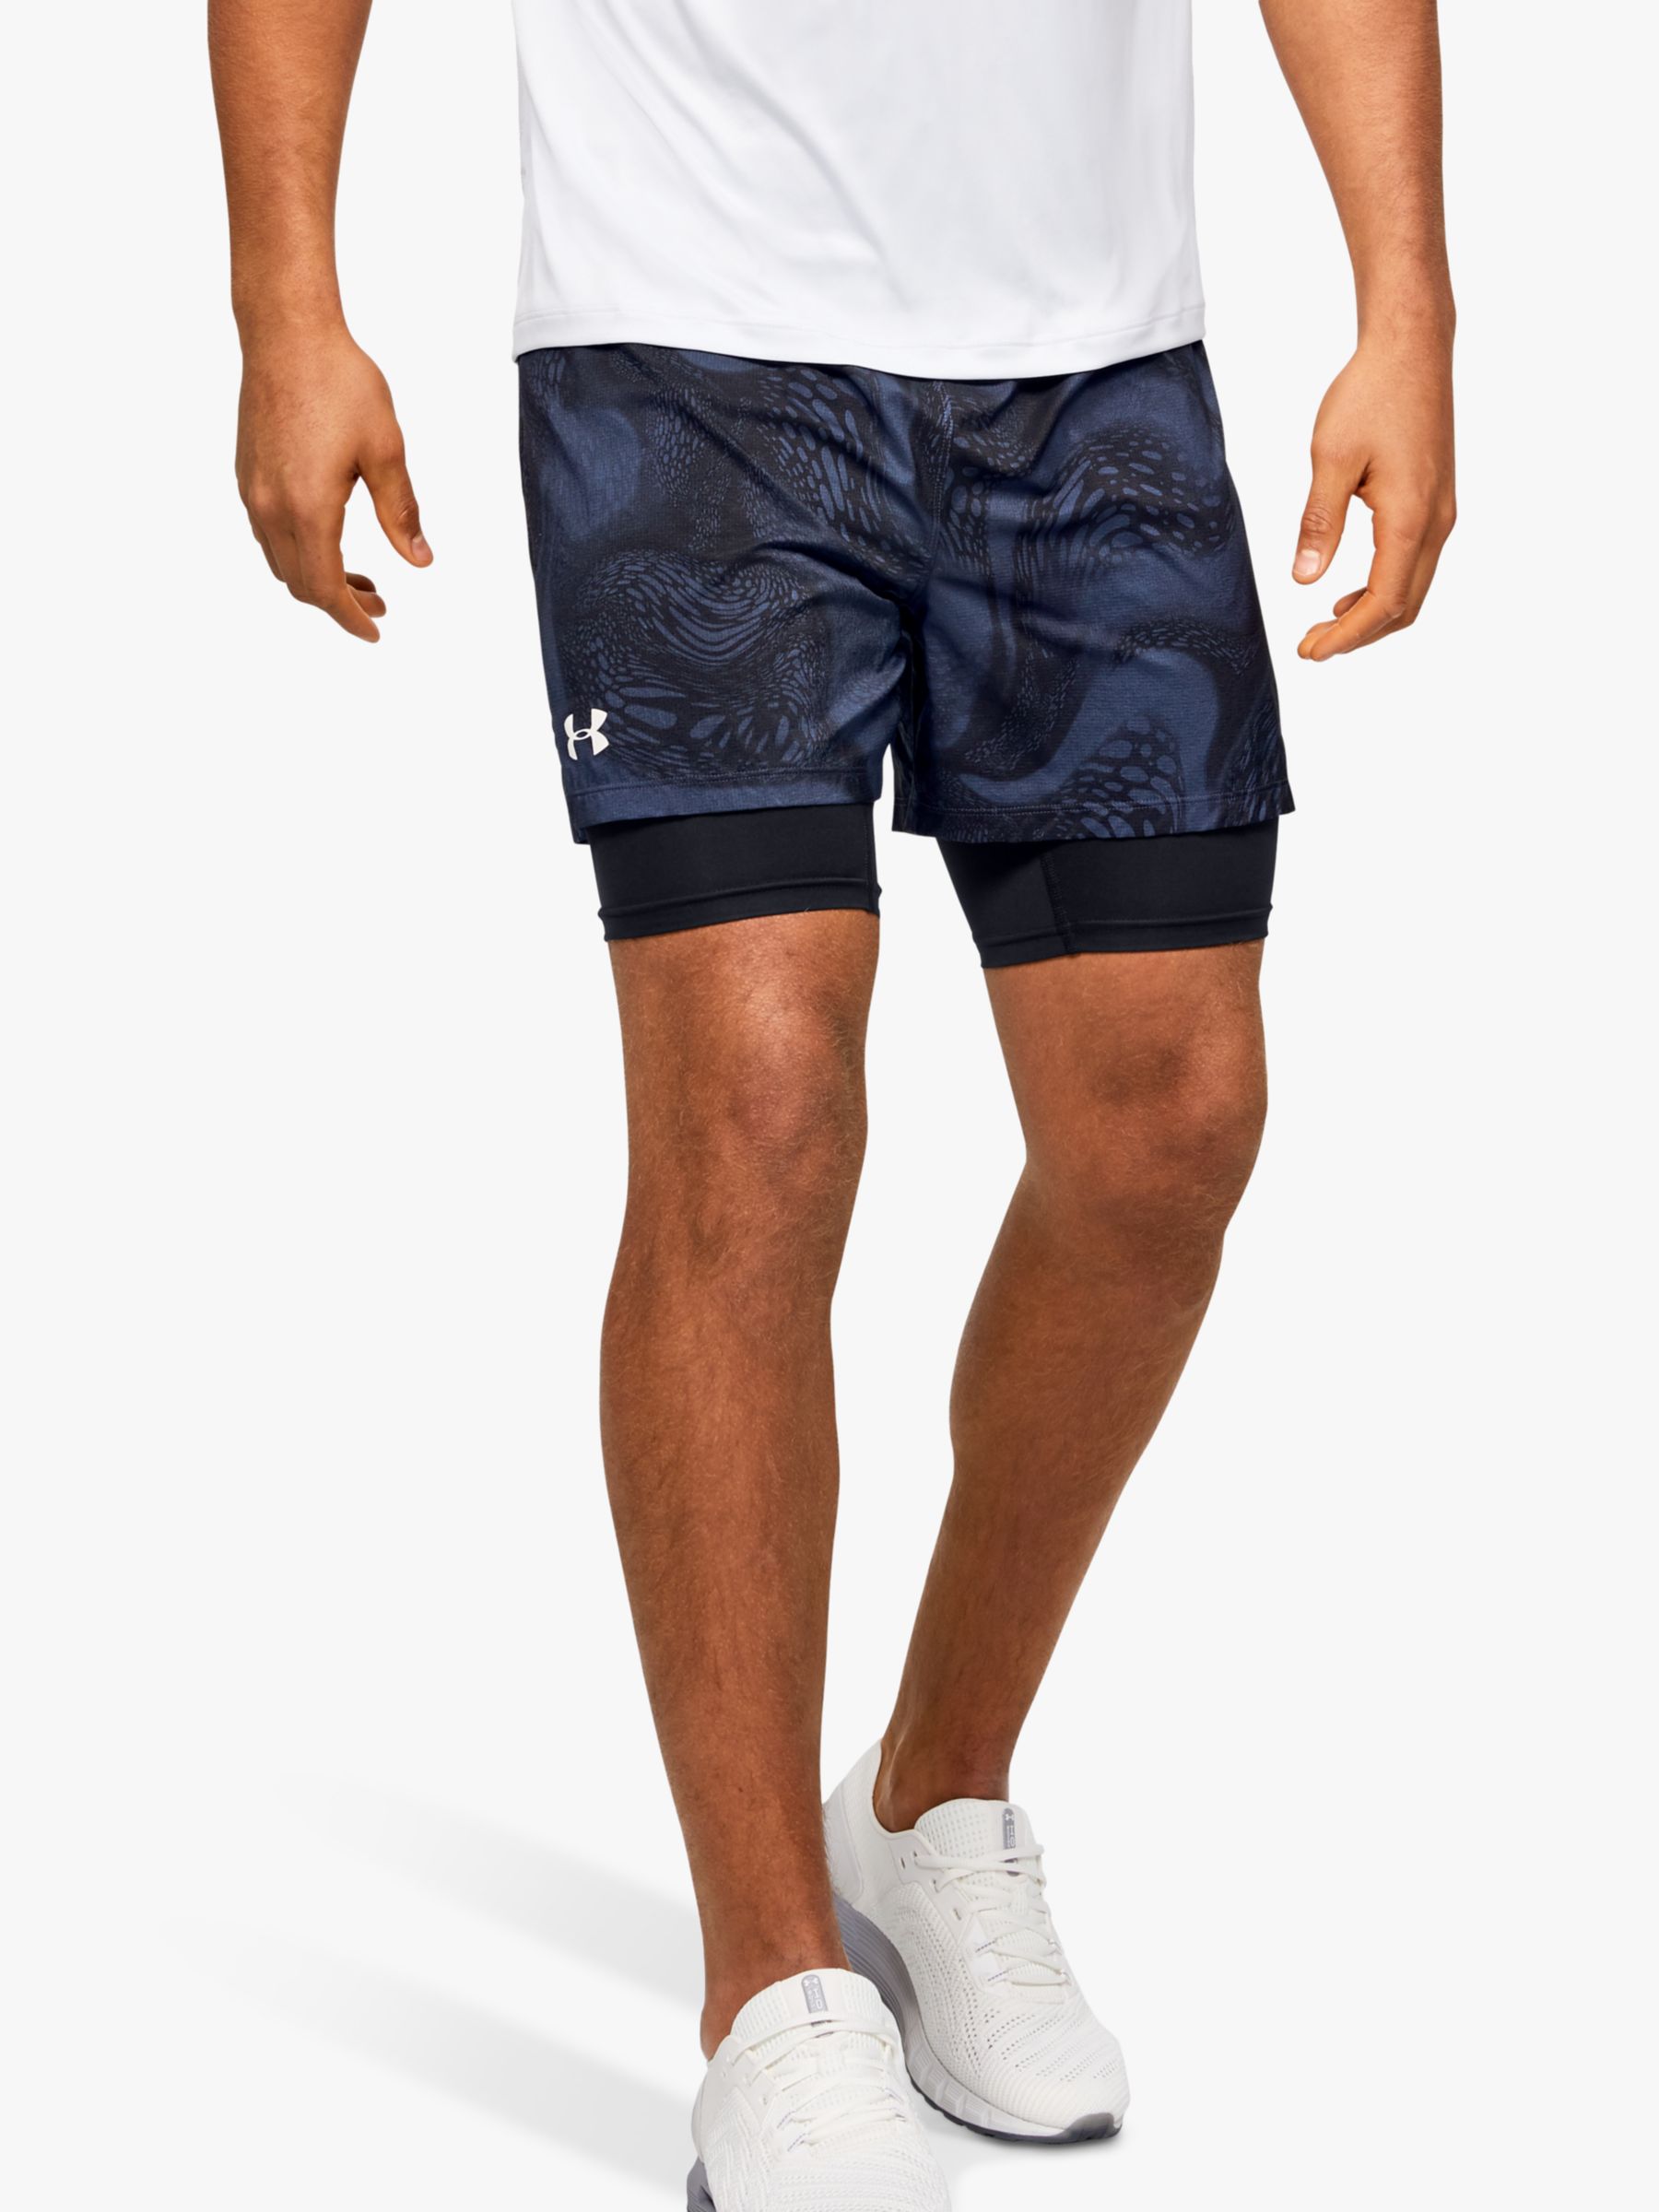 under shorts for running